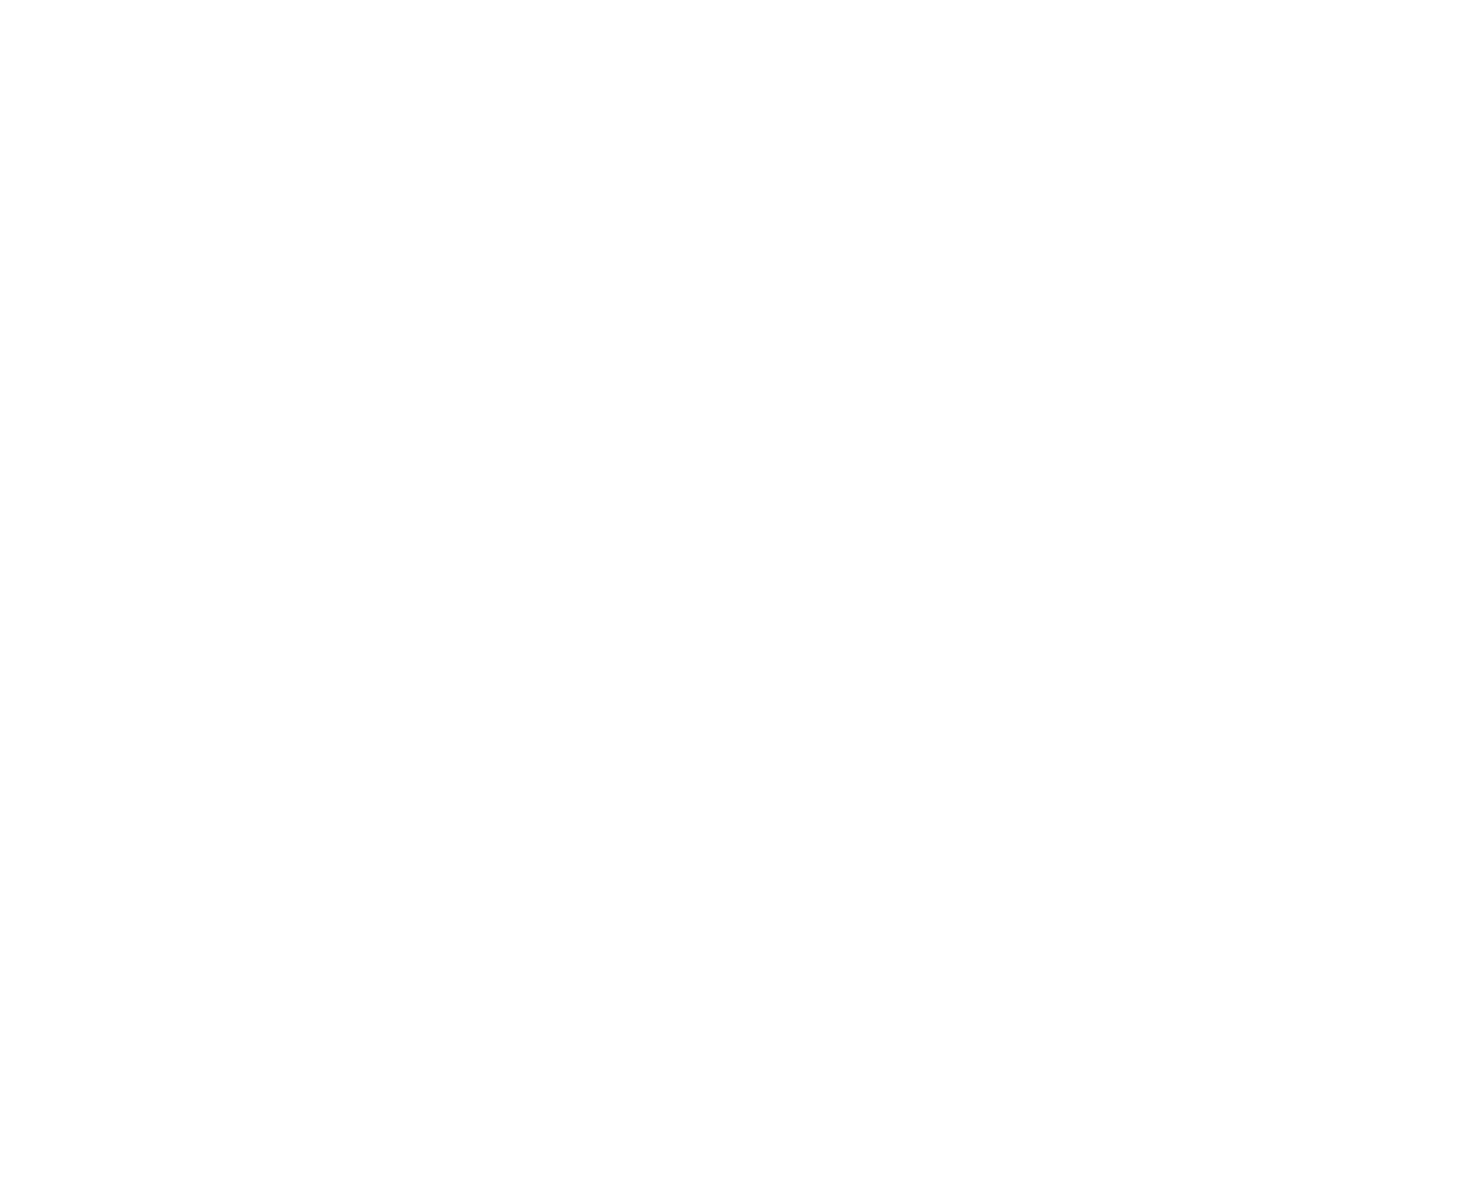 ViaSat logo pour fonds sombres (PNG transparent)